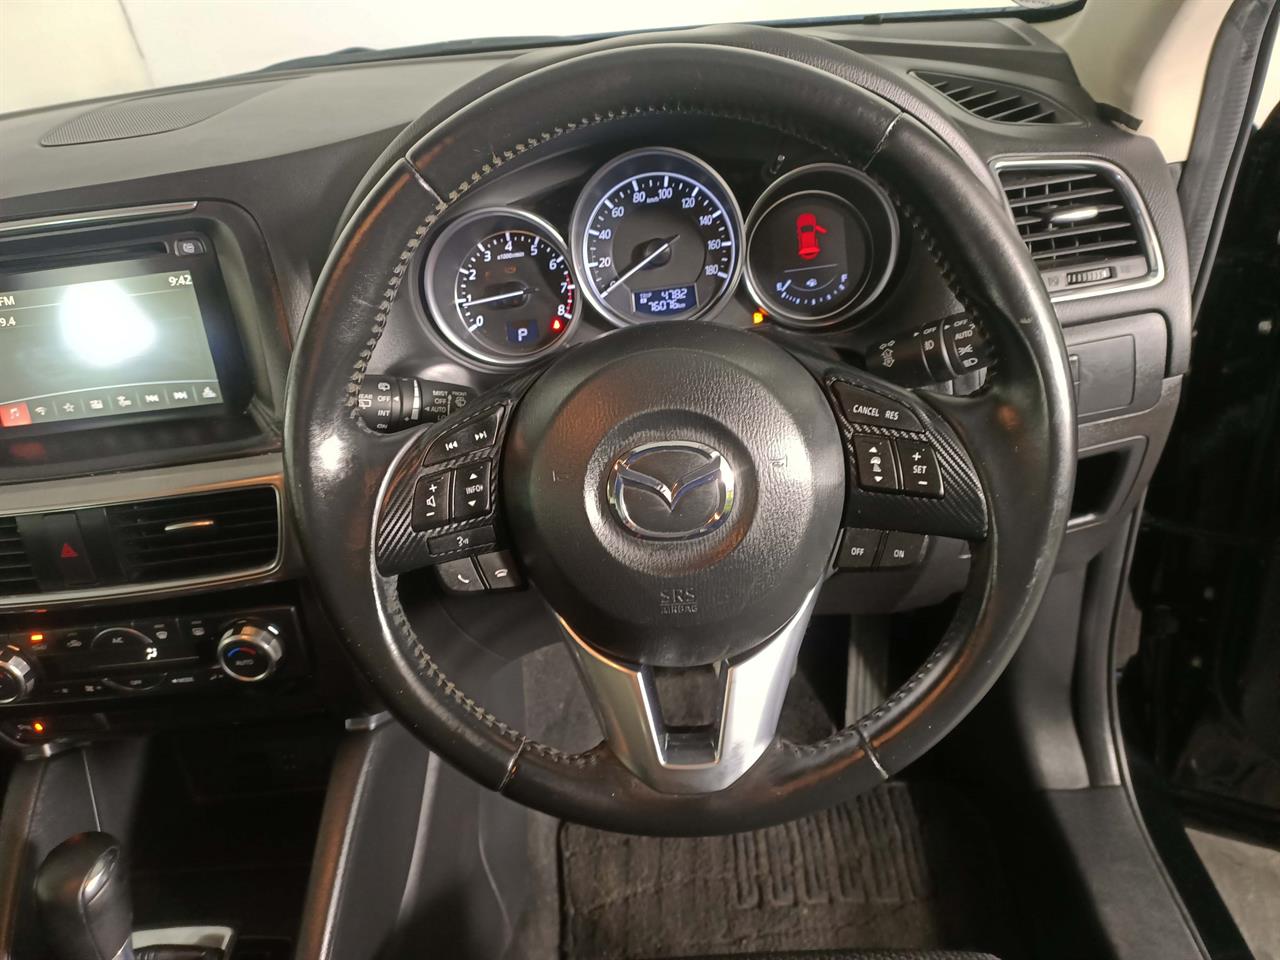 2015 Mazda CX-5 Proactive